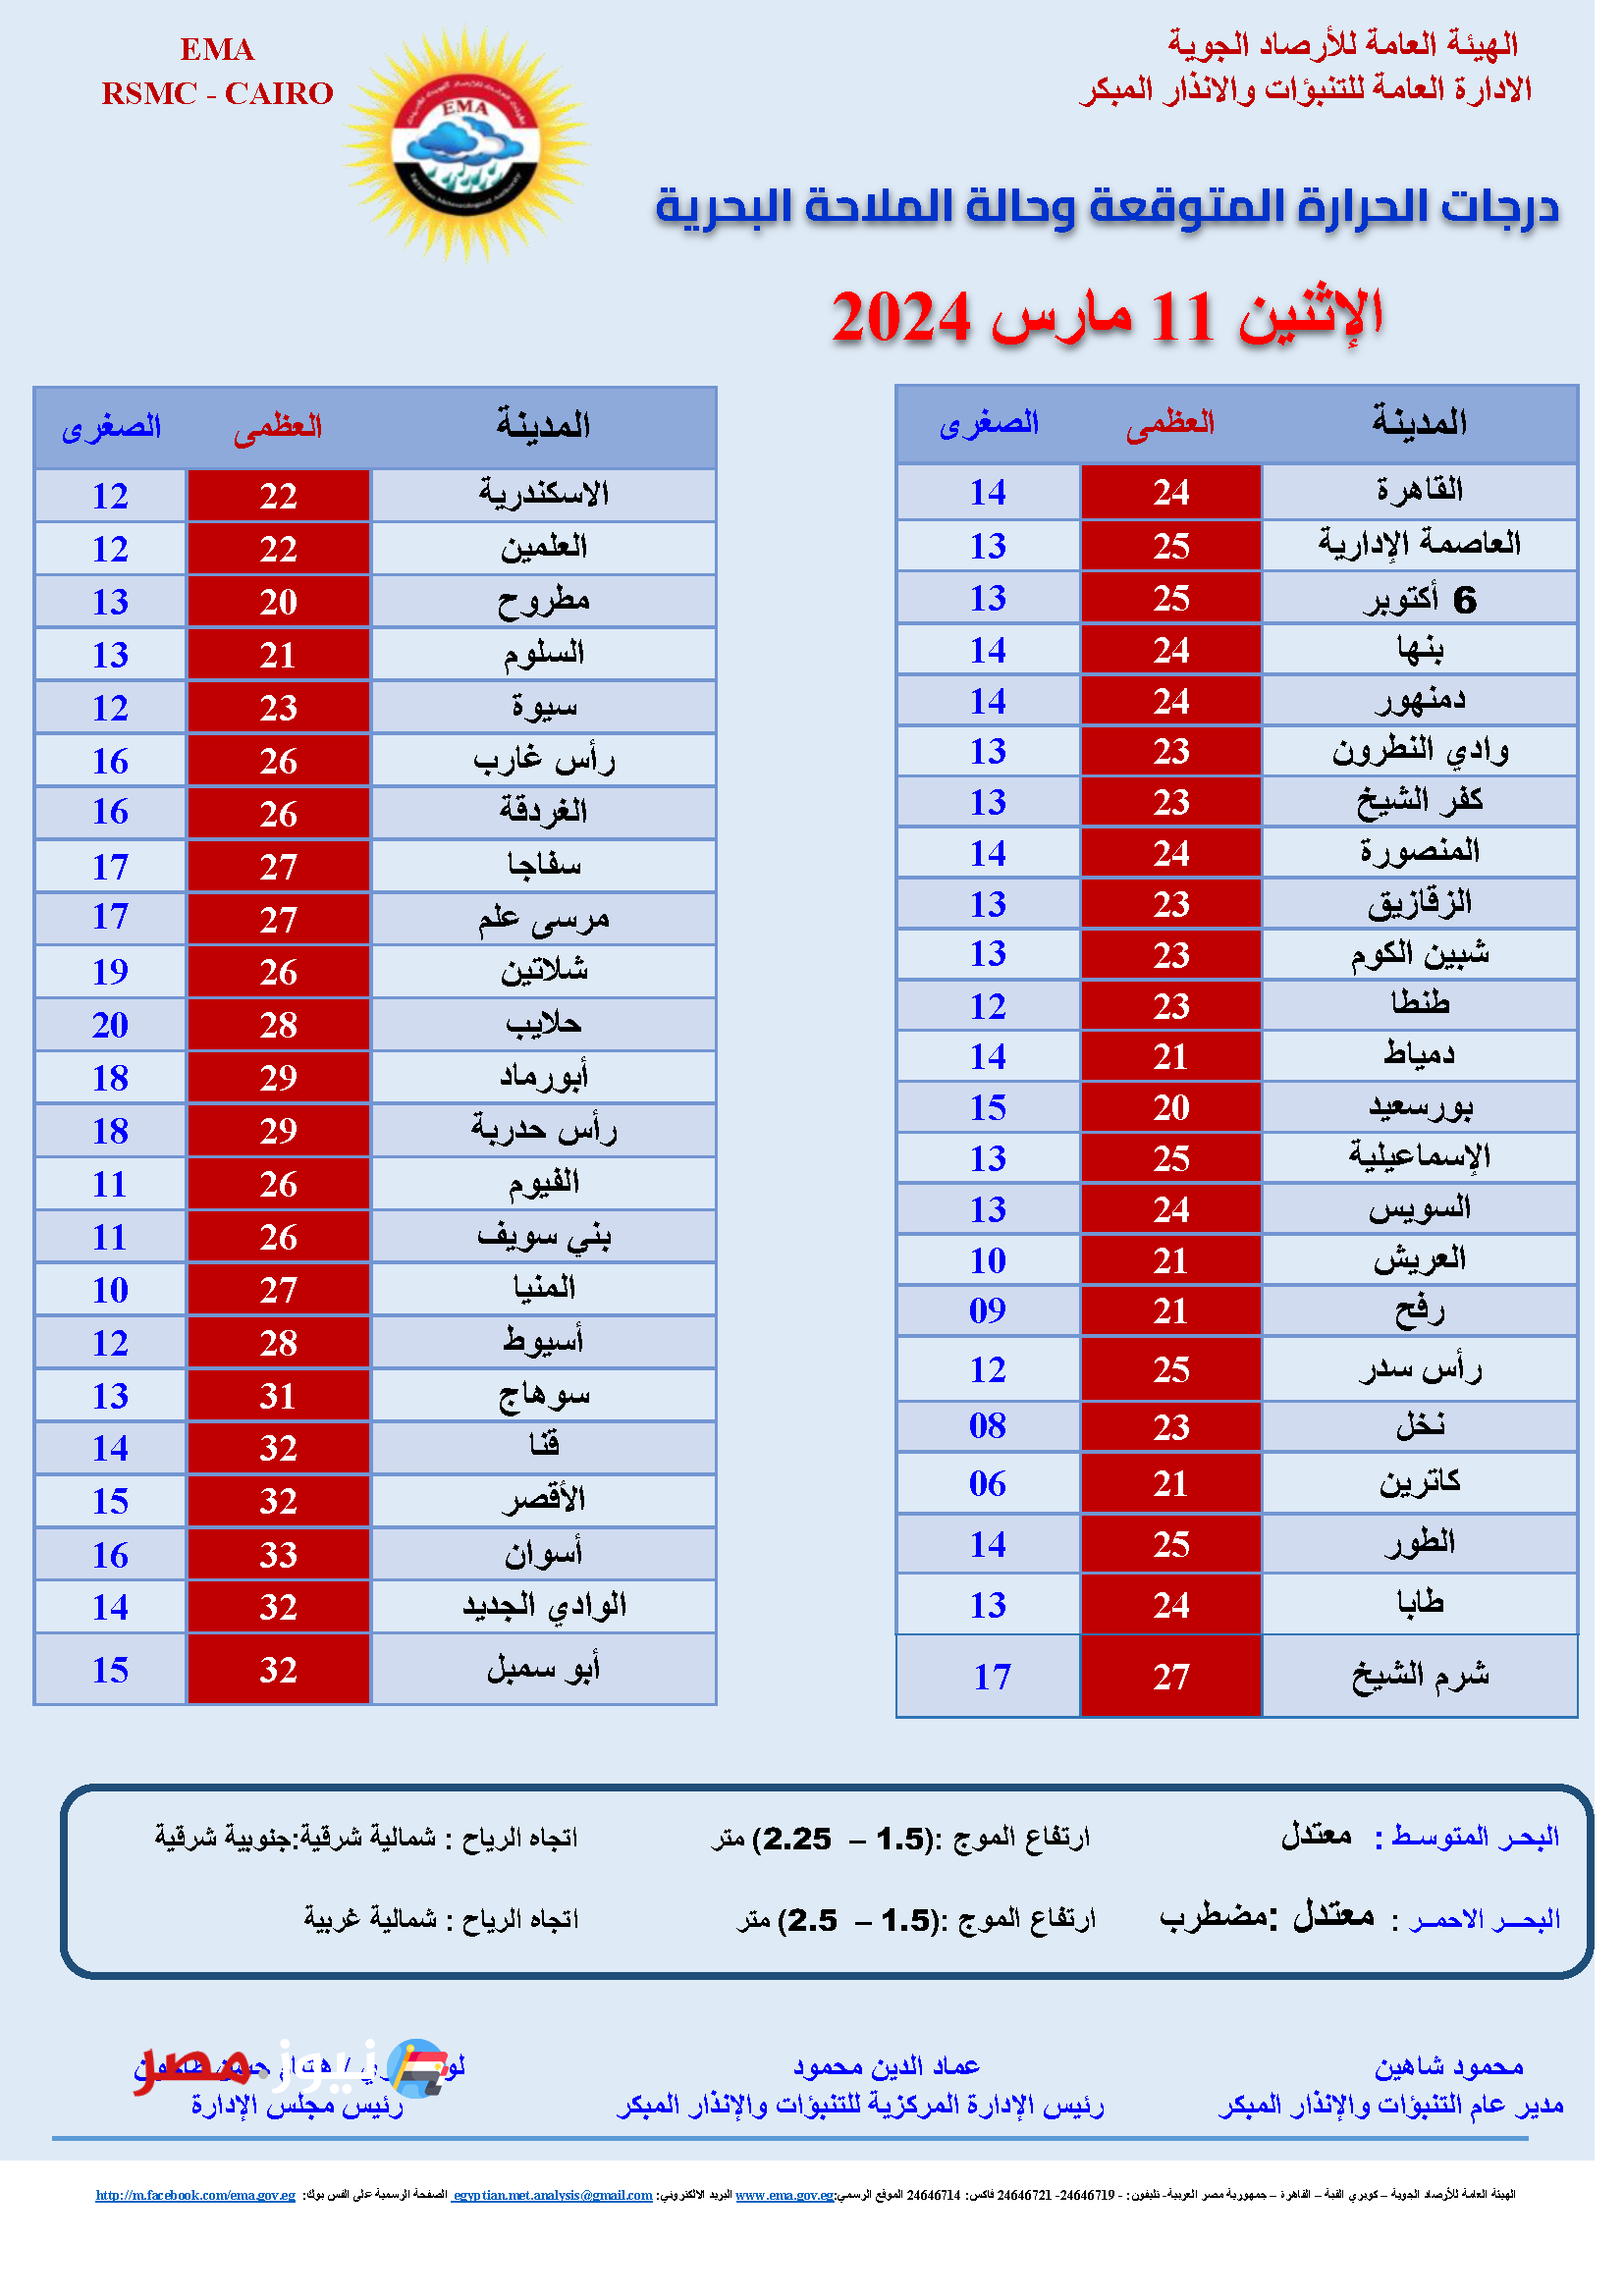 "علشان العزومات عايزة جو مناسب" الأرصاد الجوية توضح حالة الطقس في أول أيام رمضان الاثنين 11 مارس 2024